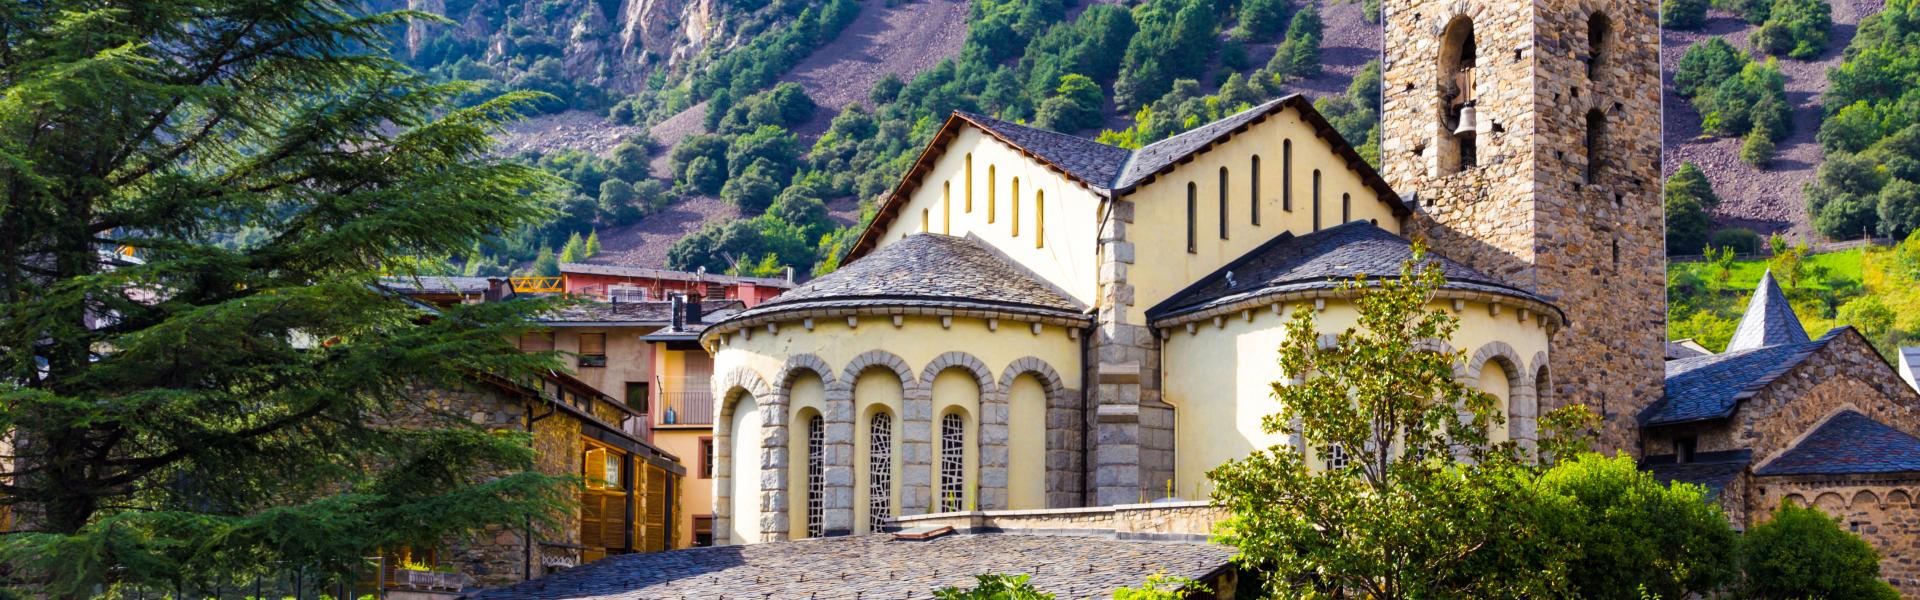 Prova på en festlig upplevelse med en kulturell tvist i ett semesterhus Andorra - Casamundo